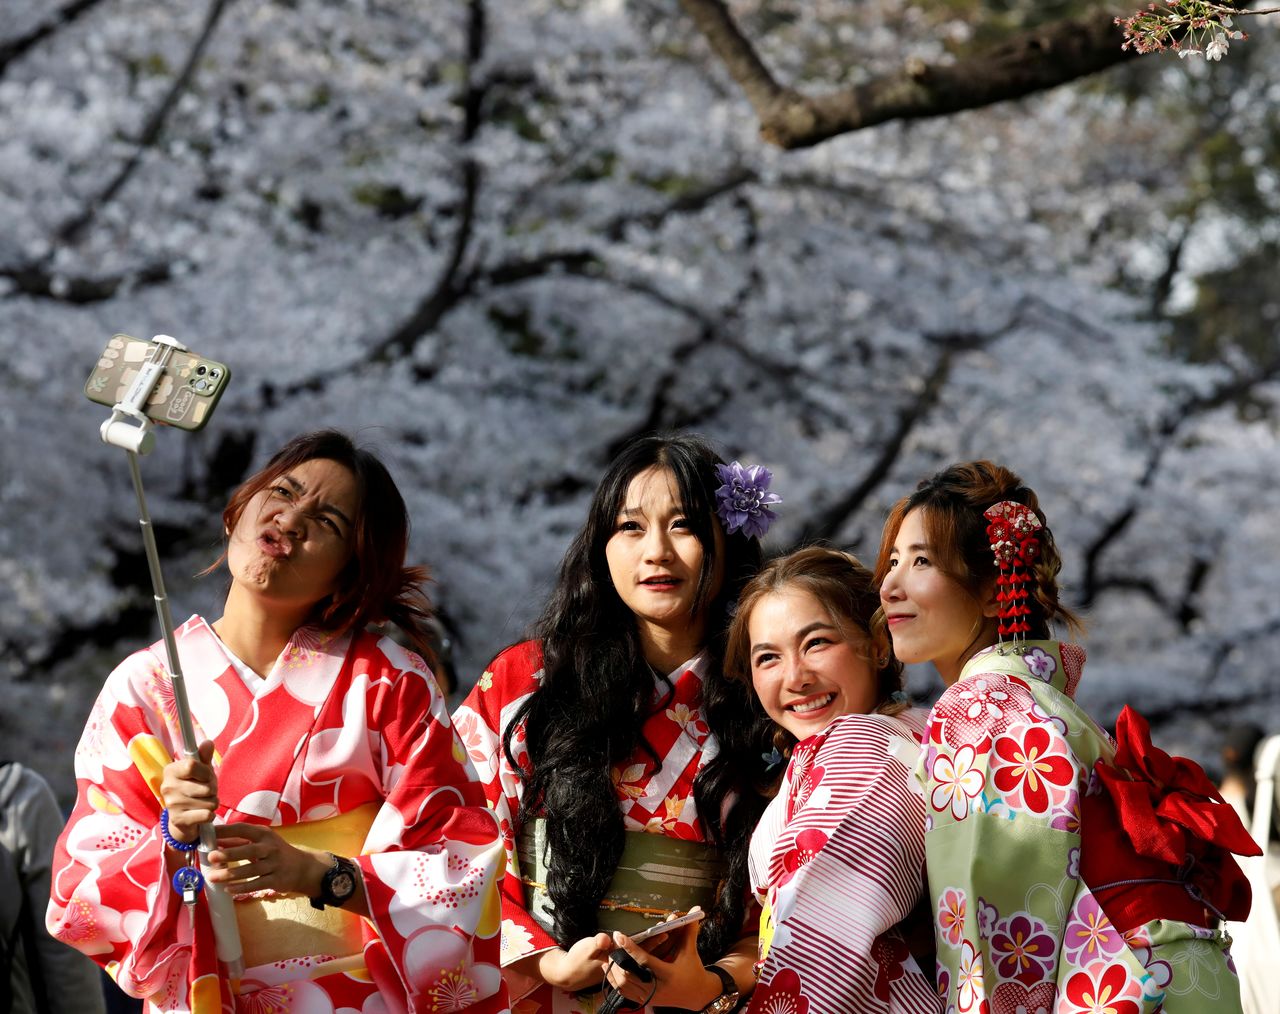 نساء من تايلاند يرتدين زي الكيمونو يلتقطن صور سيلفي بين أزهار الكرز المتفتحة في حديقة أوينو في طوكيو باليابان في 27 مارس/ آذار 2021. تصوير: كيم كيونغ هون، رويترز.